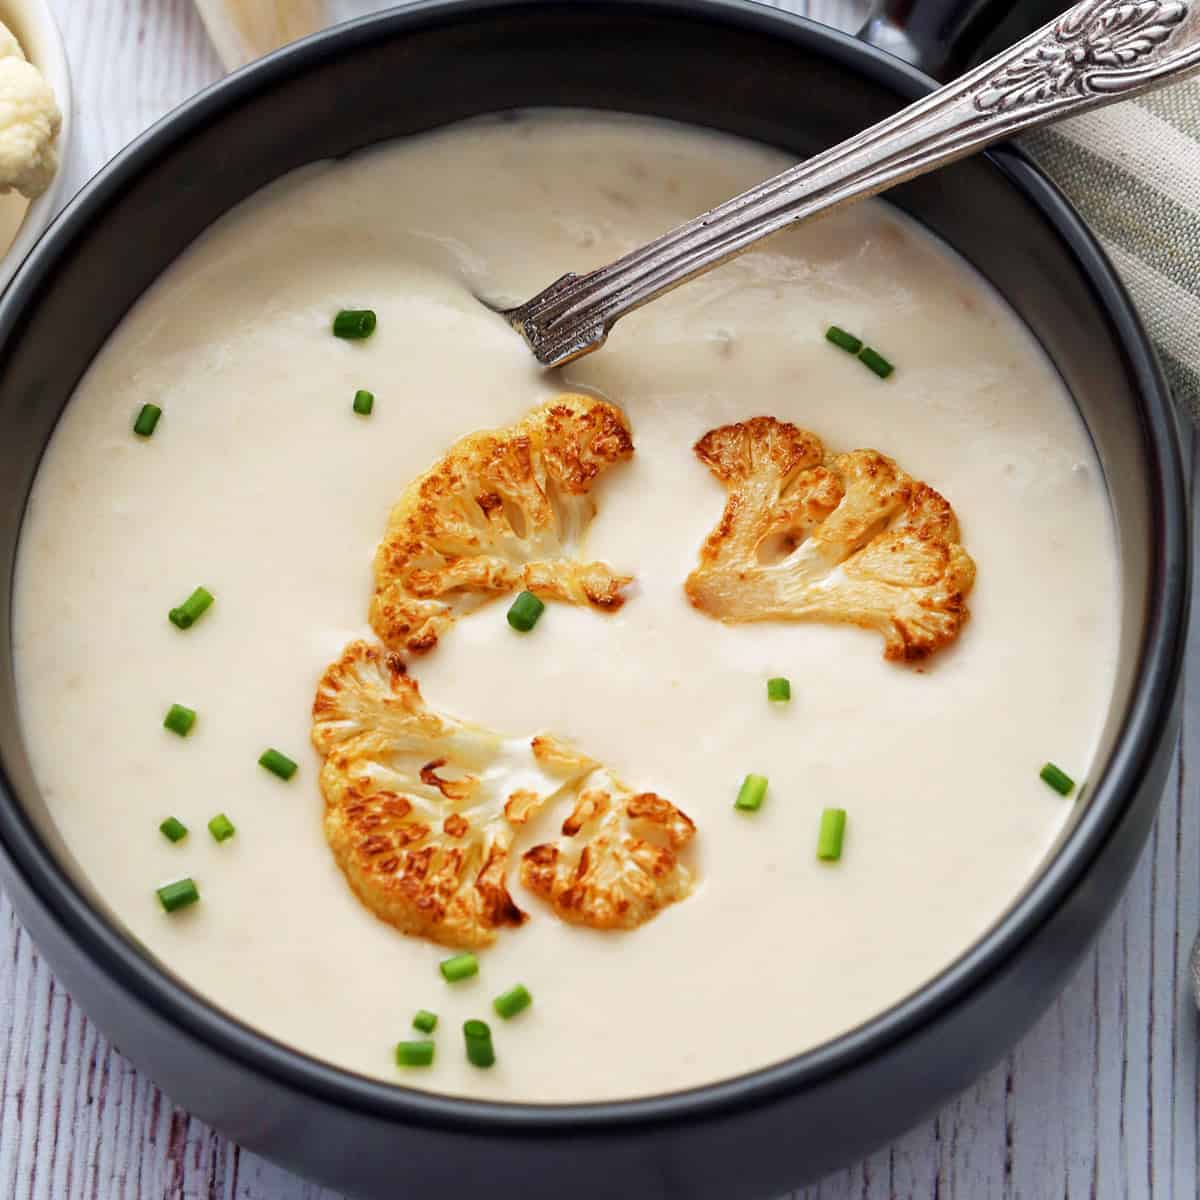 https://healthyrecipesblogs.com/wp-content/uploads/2022/05/cauliflower-soup-featured-2022.jpeg